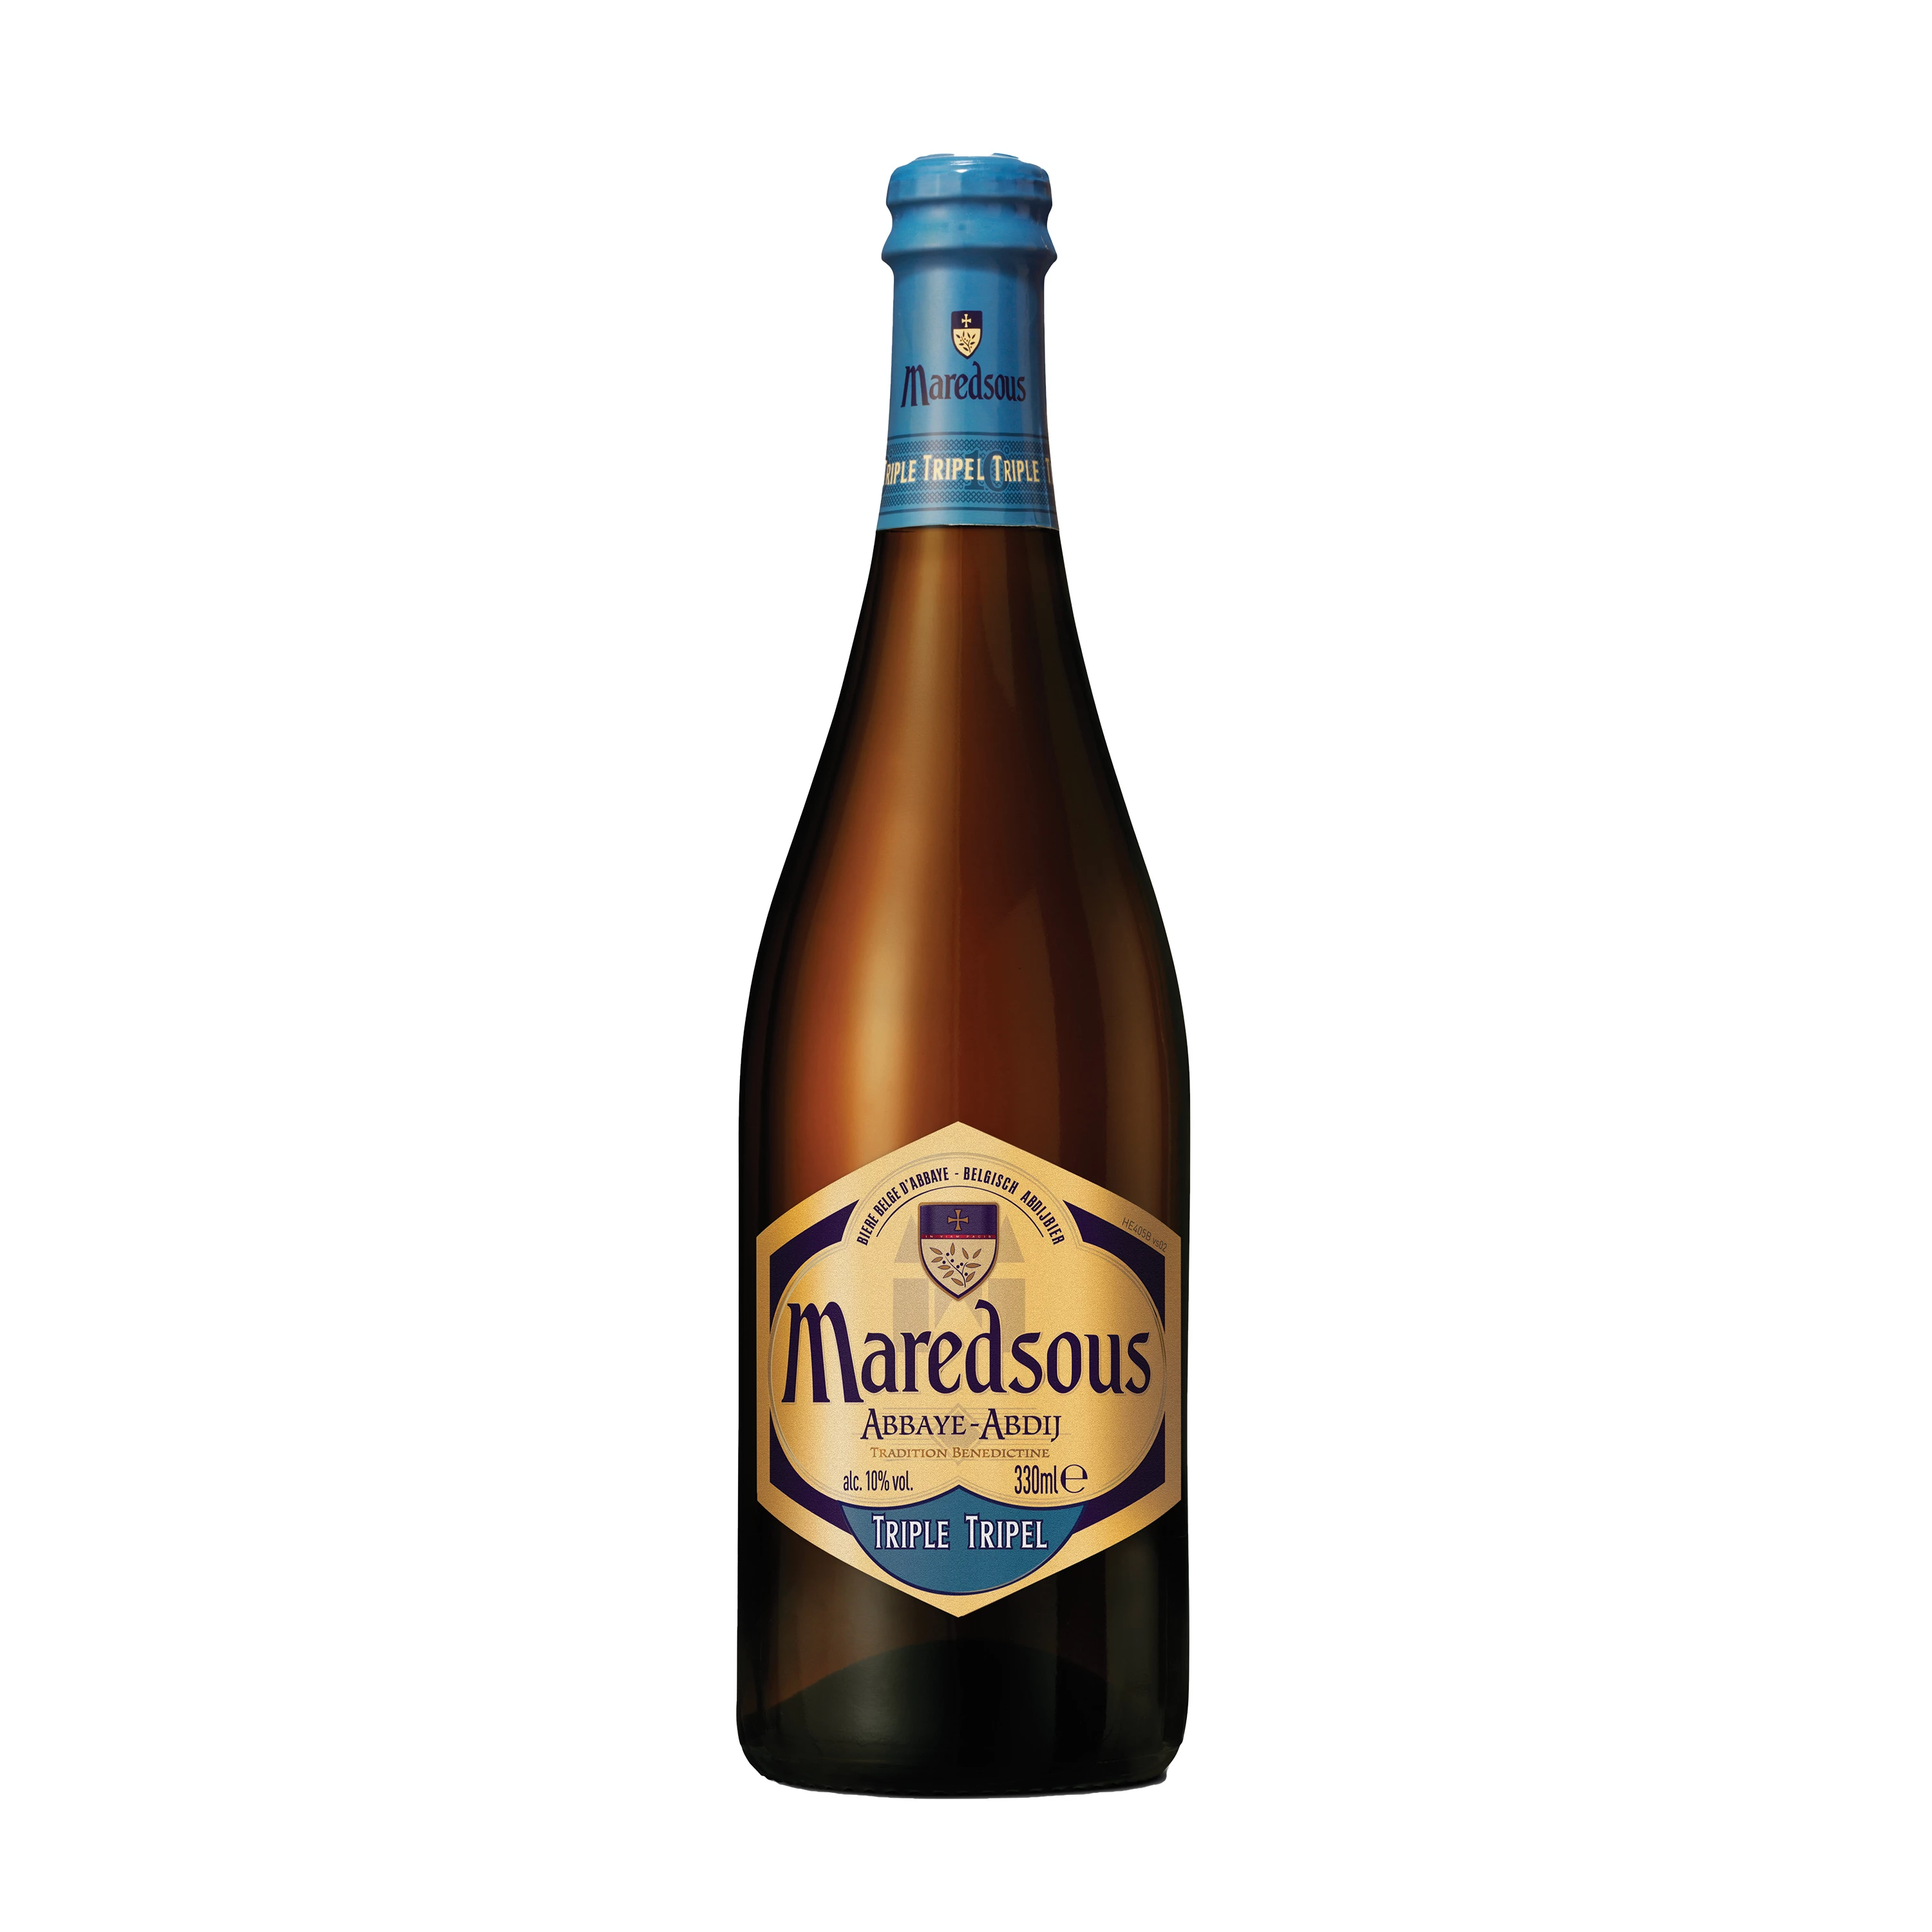 बेल्जियन ट्रिपल बीयर, 10°, 75सीएल - मैरेडसस